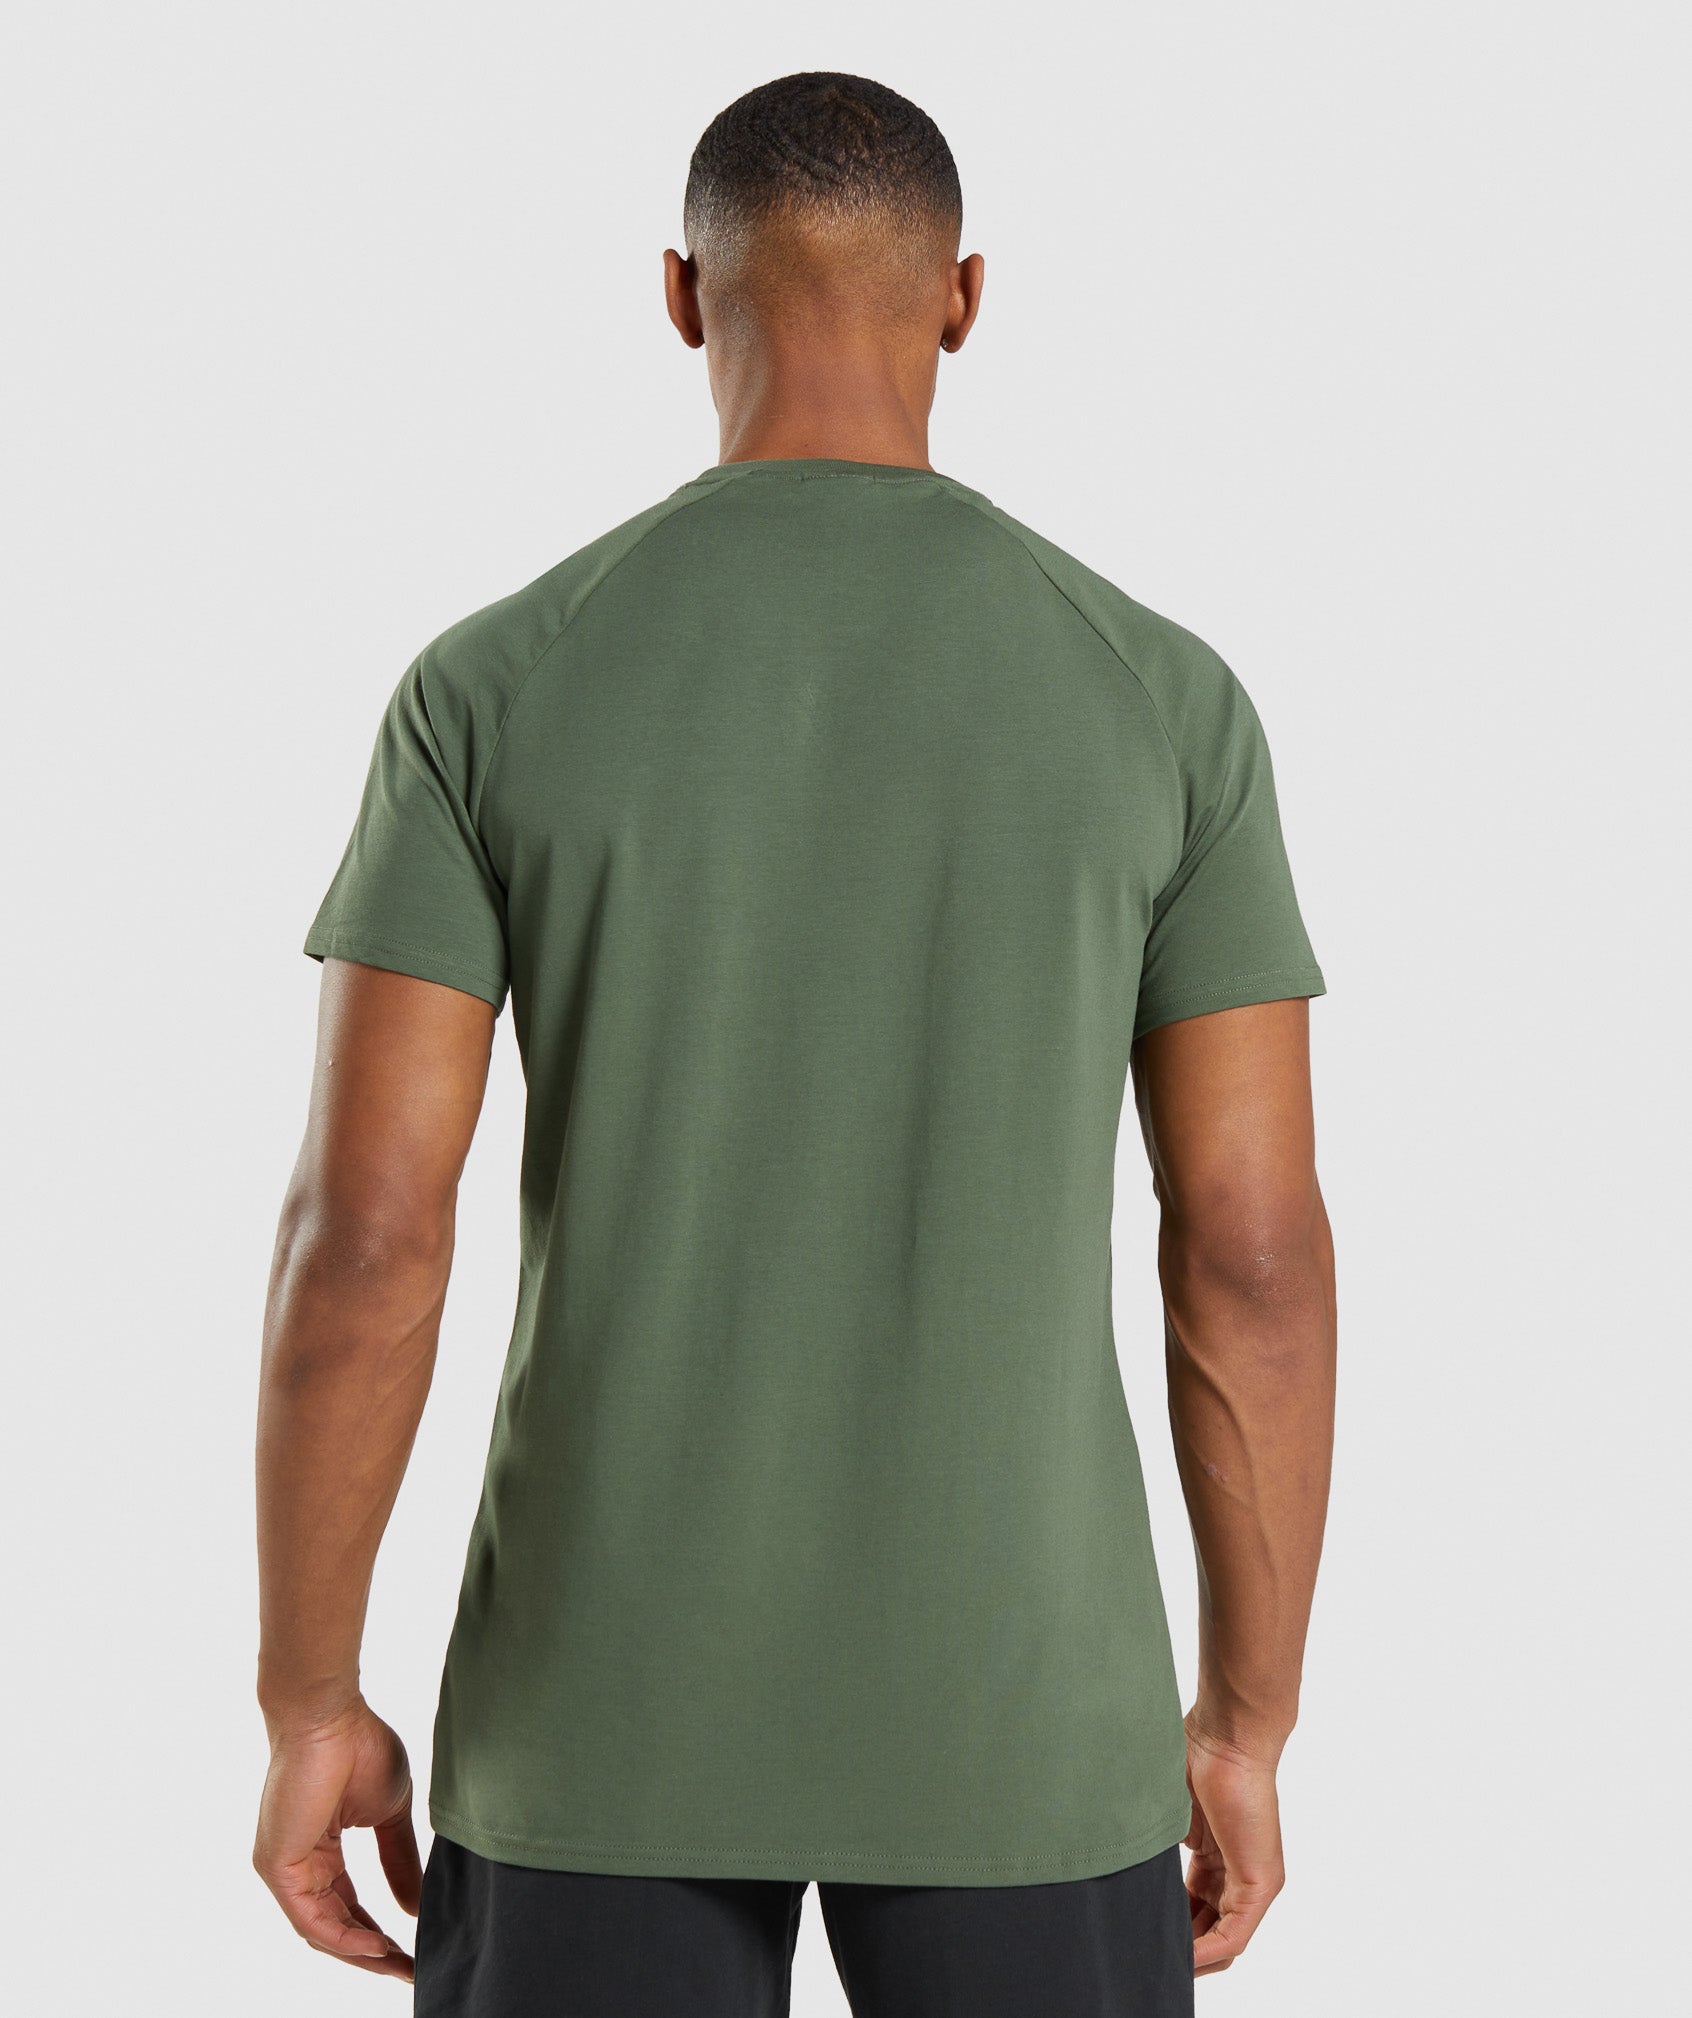 Apollo Camo T-Shirt in Camo Green - view 2